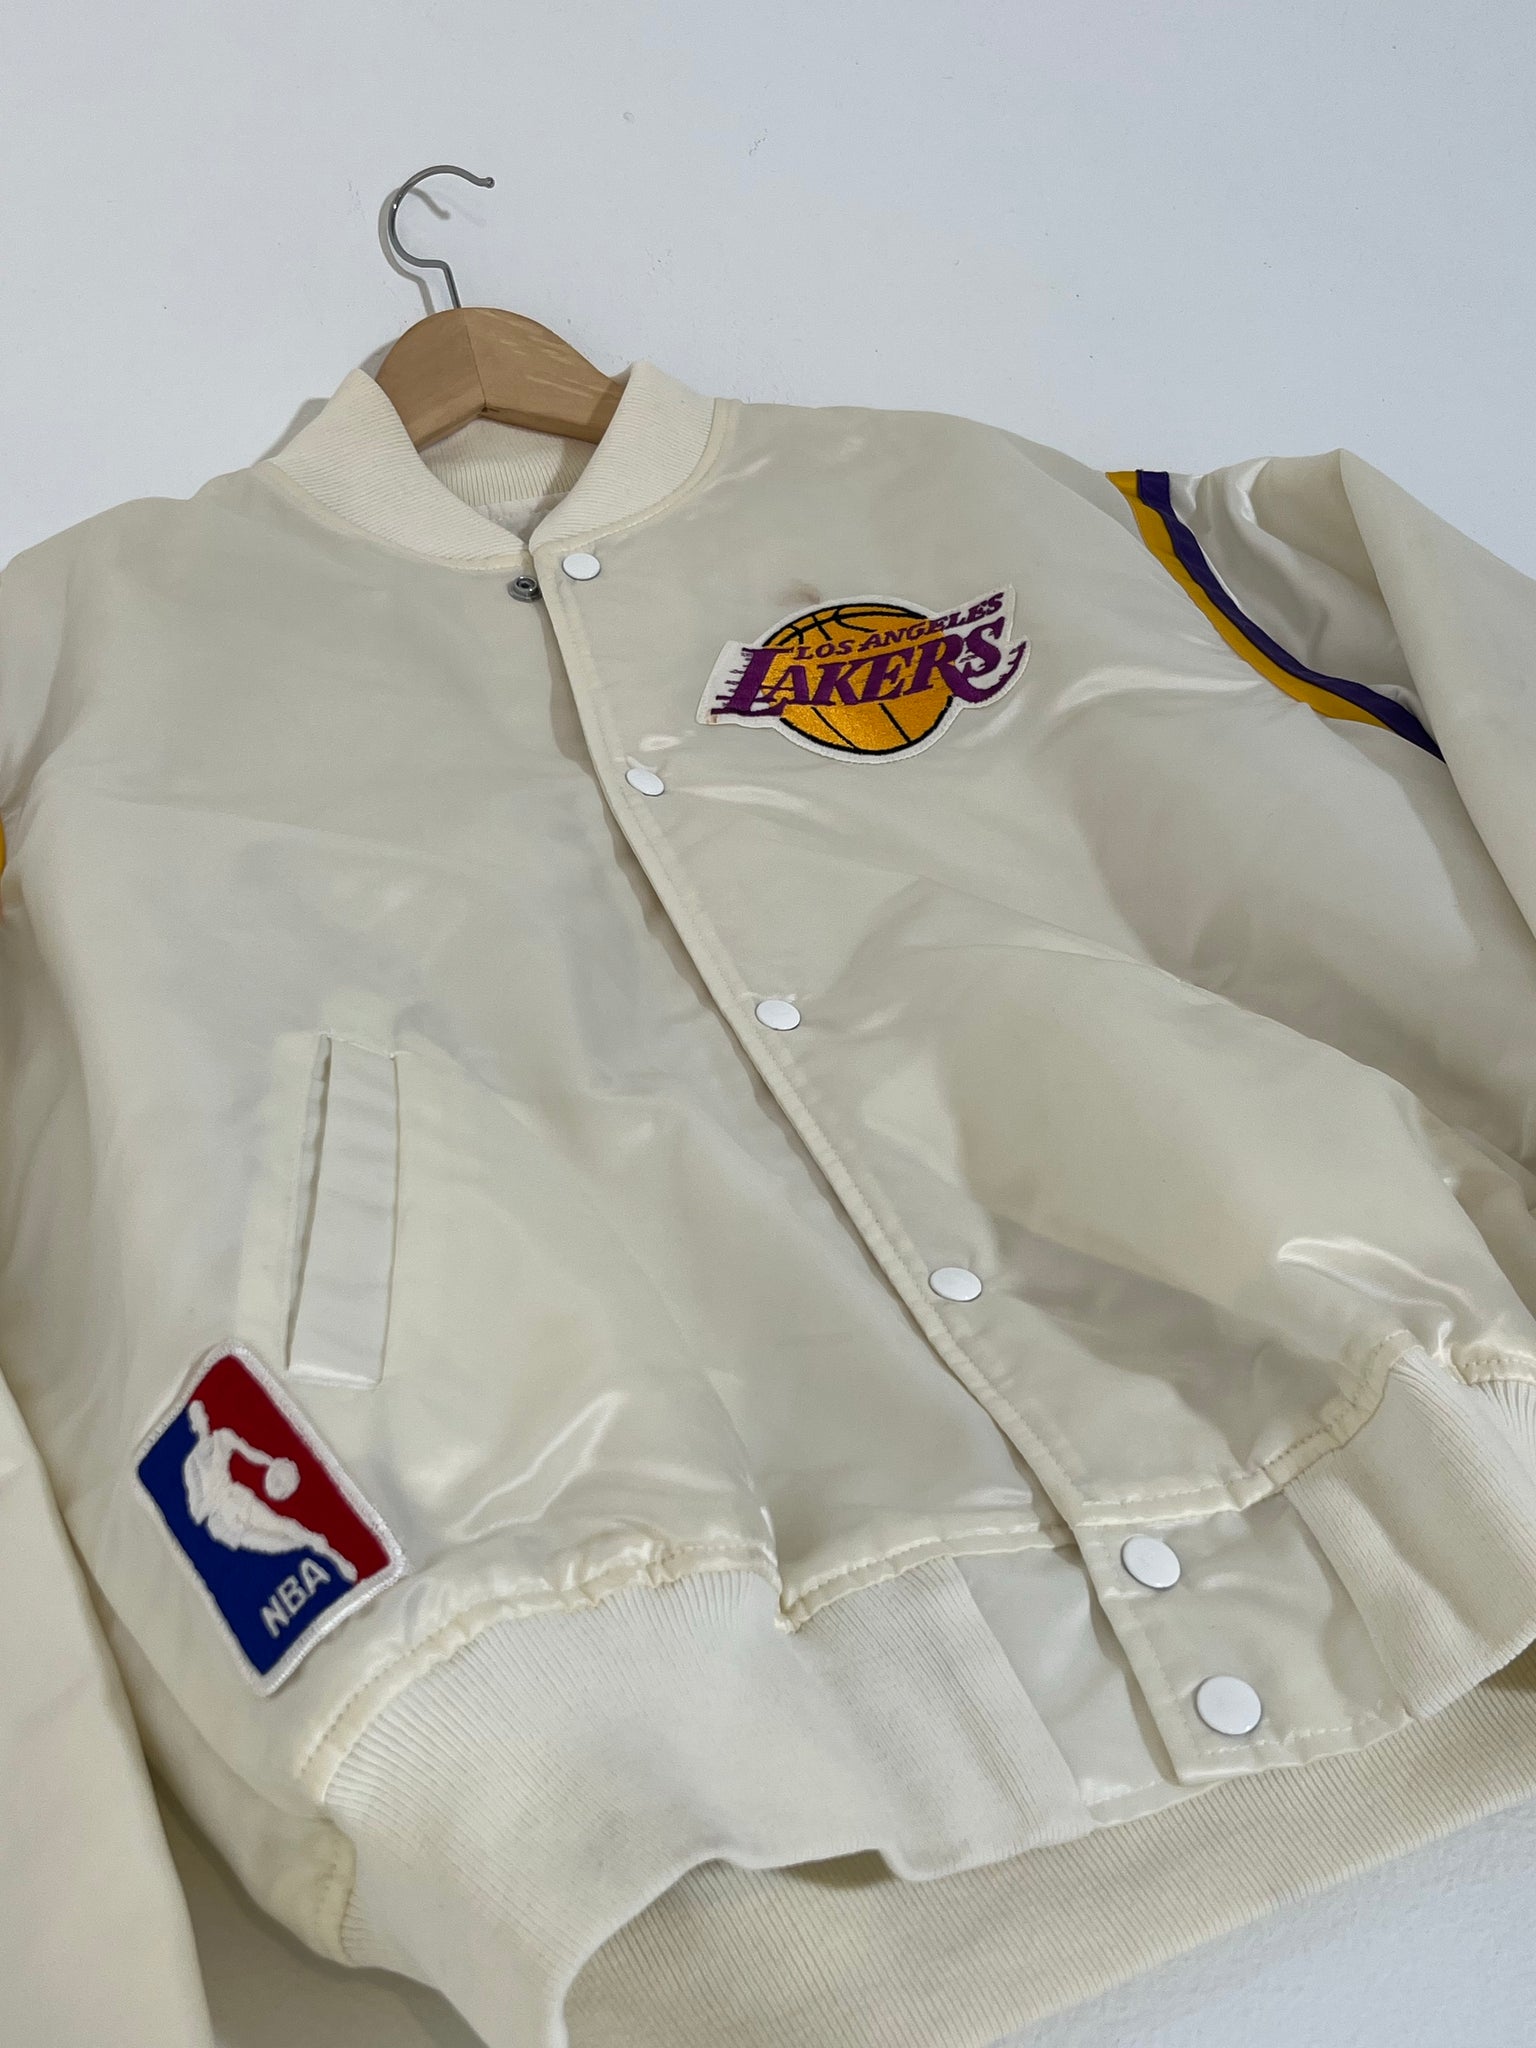 Men's L/XL Lakers Vintage Starter Satin Bomber Jacket for Sale in